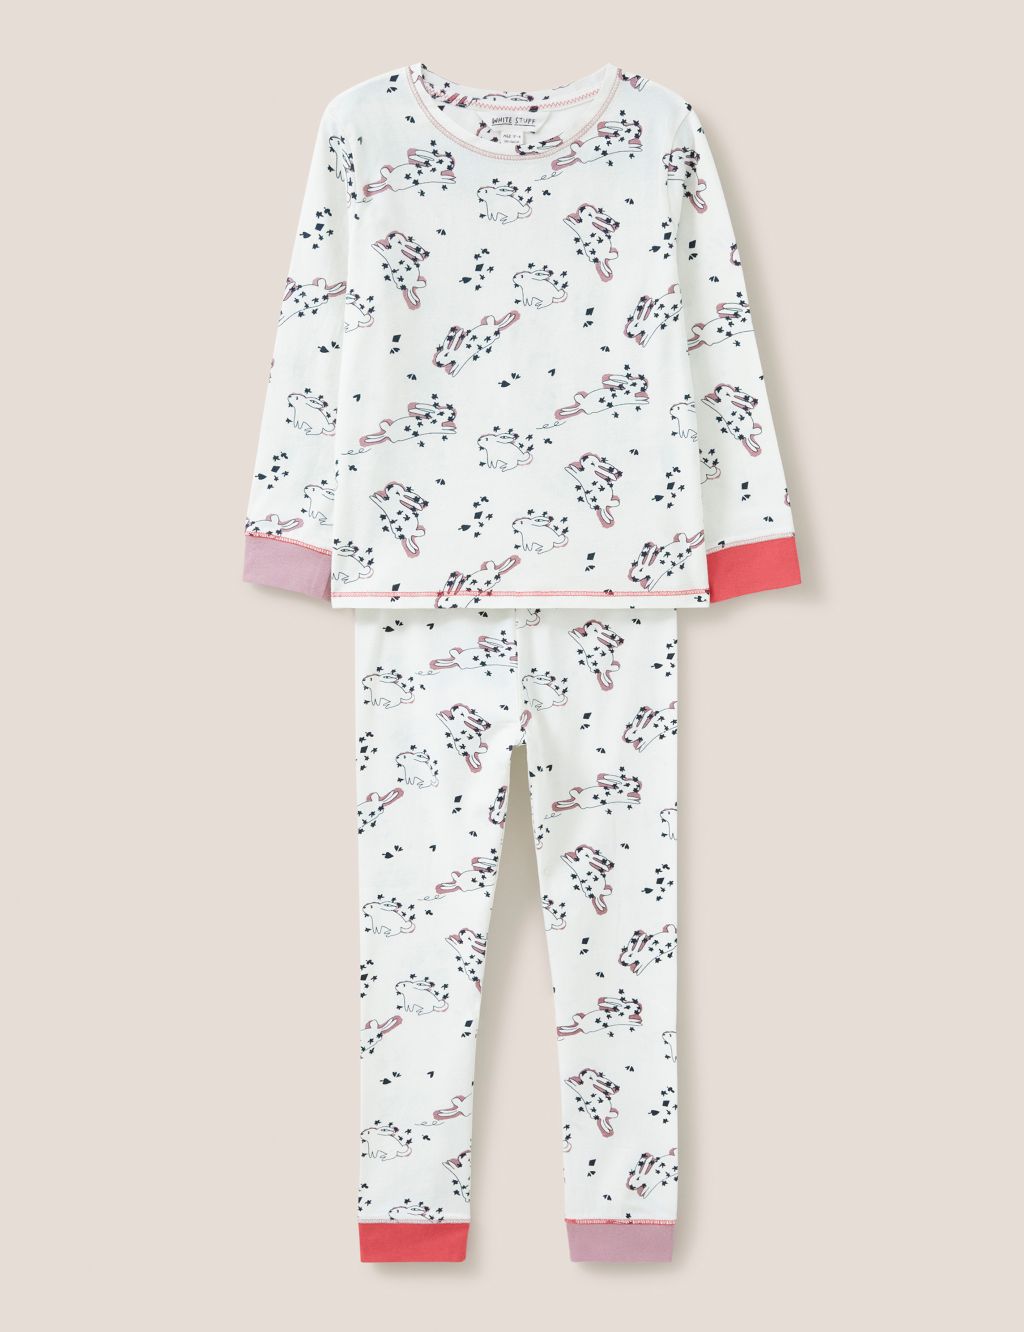 Cotton Rich Bunny Print Pyjamas (3-10 Yrs) image 1